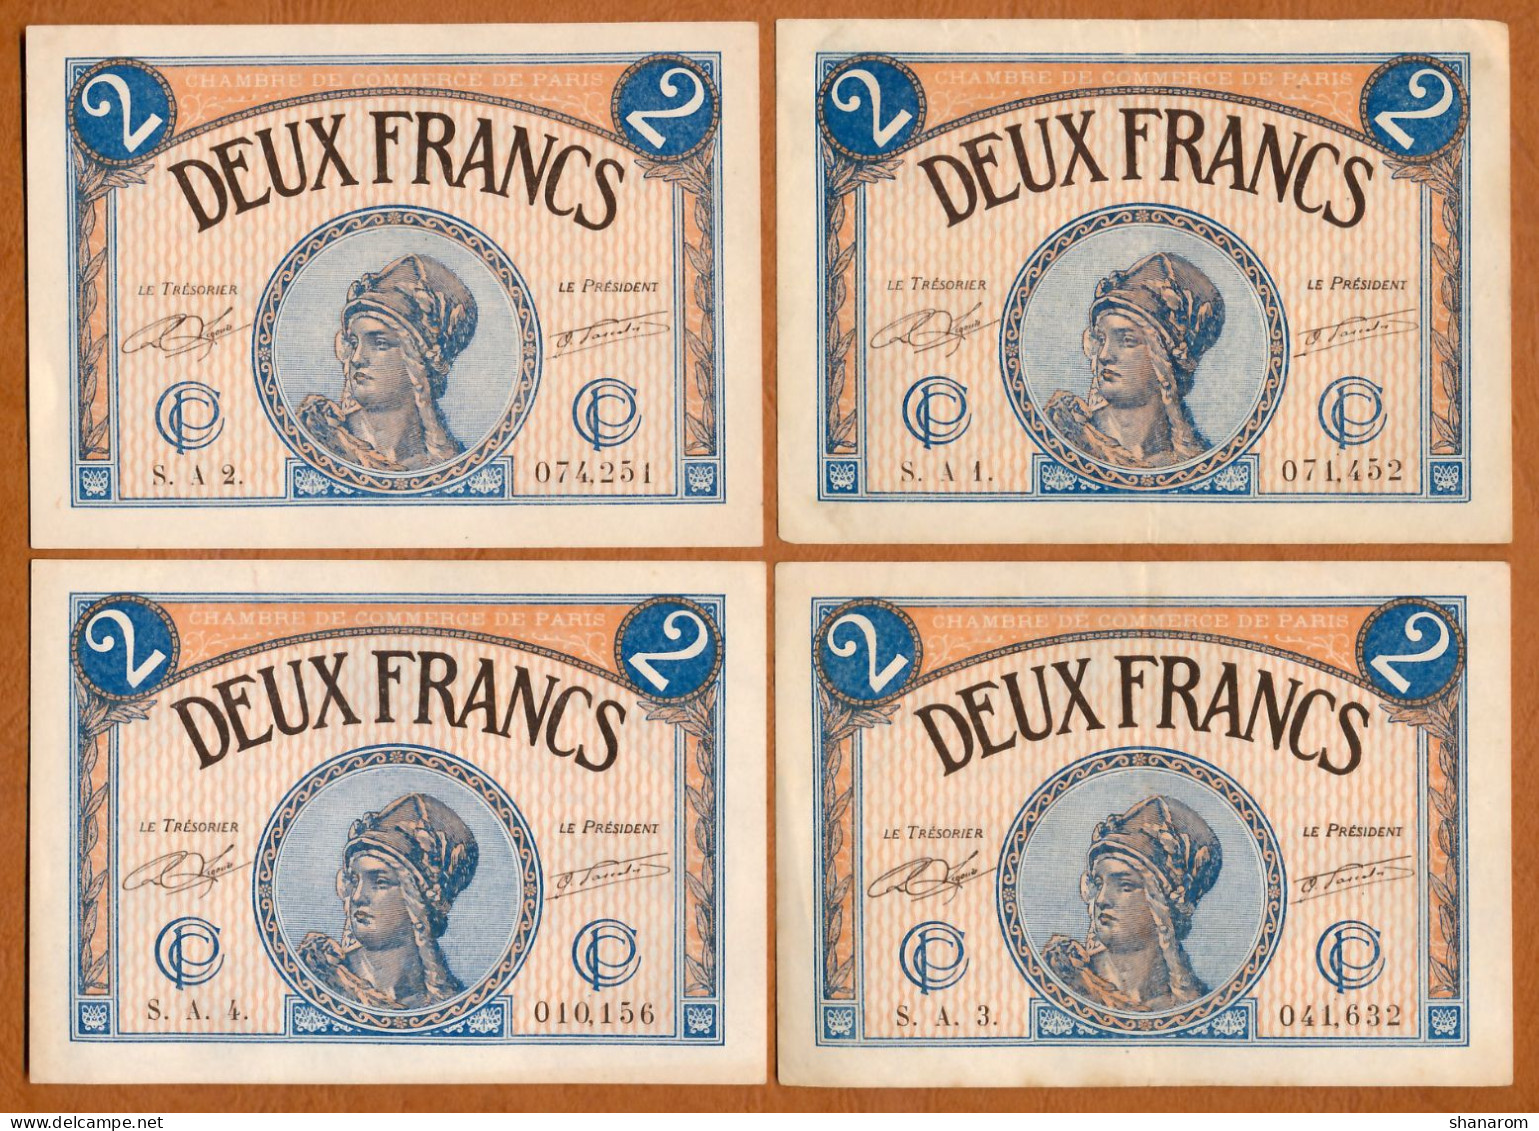 1914-20 // C.D.C. // PARIS (75) // Mars 1920 // 23 Billets // Séries Différentes // Deux Francs - Chamber Of Commerce